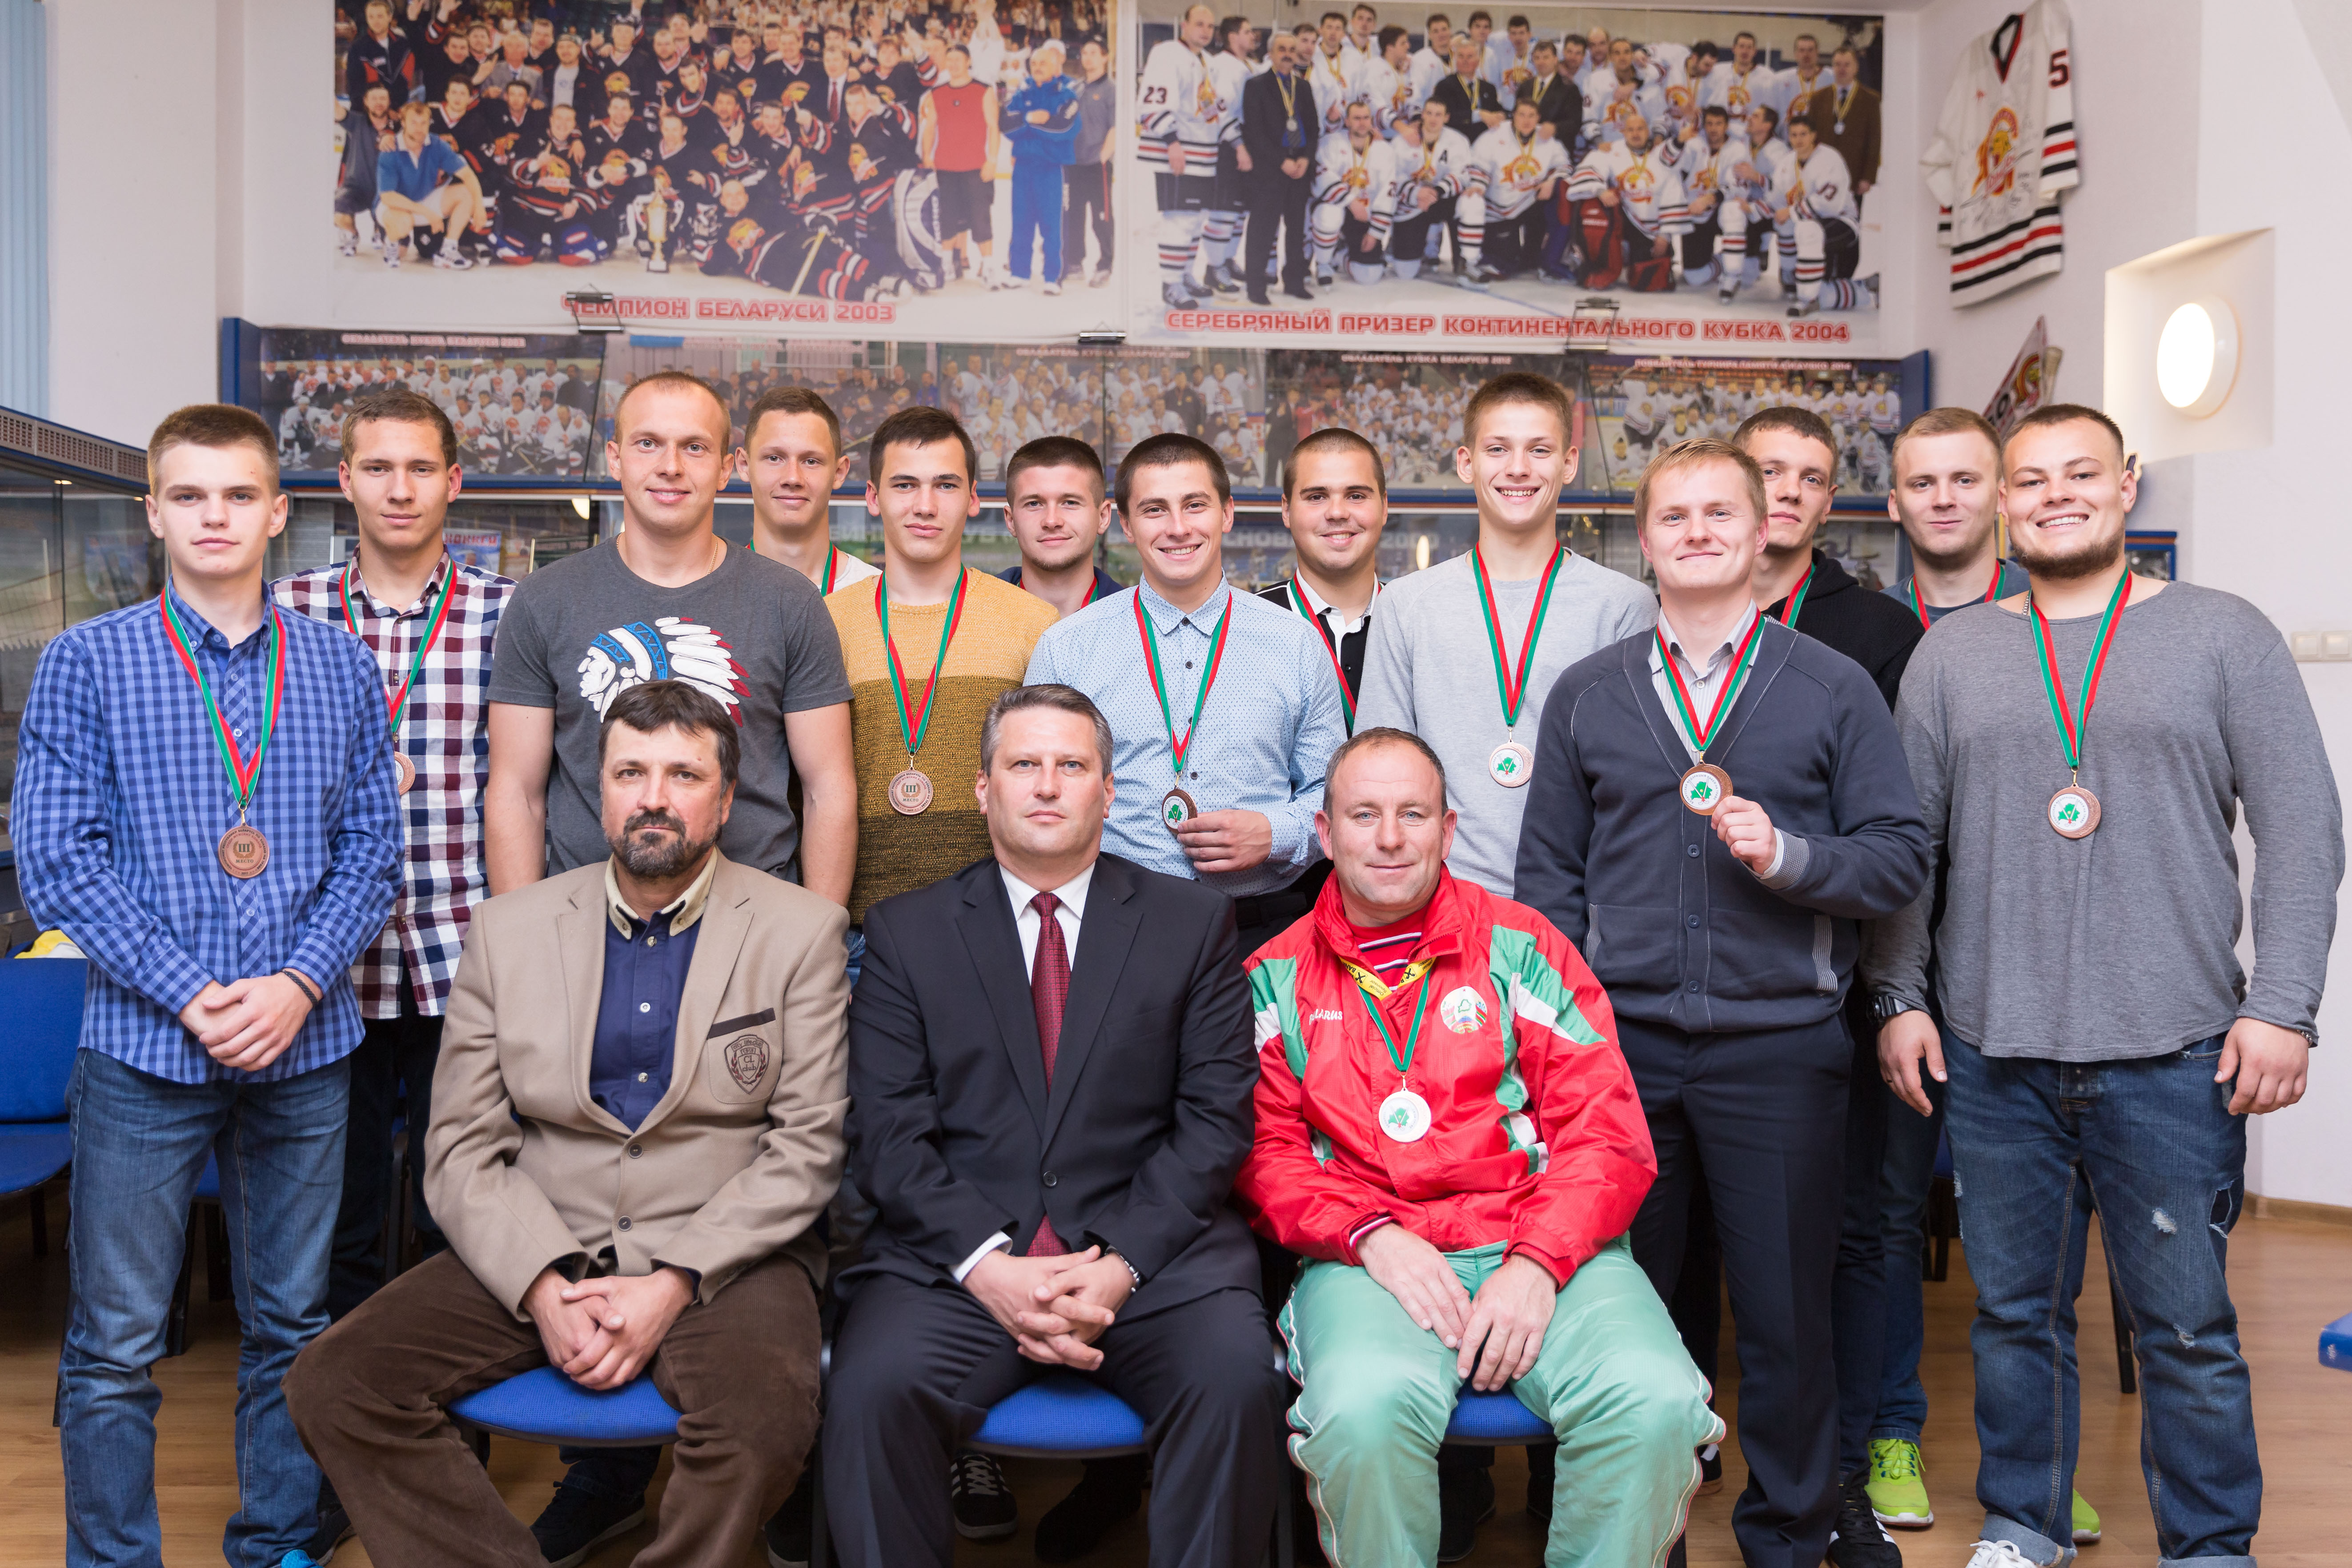 Чествование сборной Гомельской области, занявшей третье место в чемпионате Республики Беларусь по хоккею на траве 2016-2017